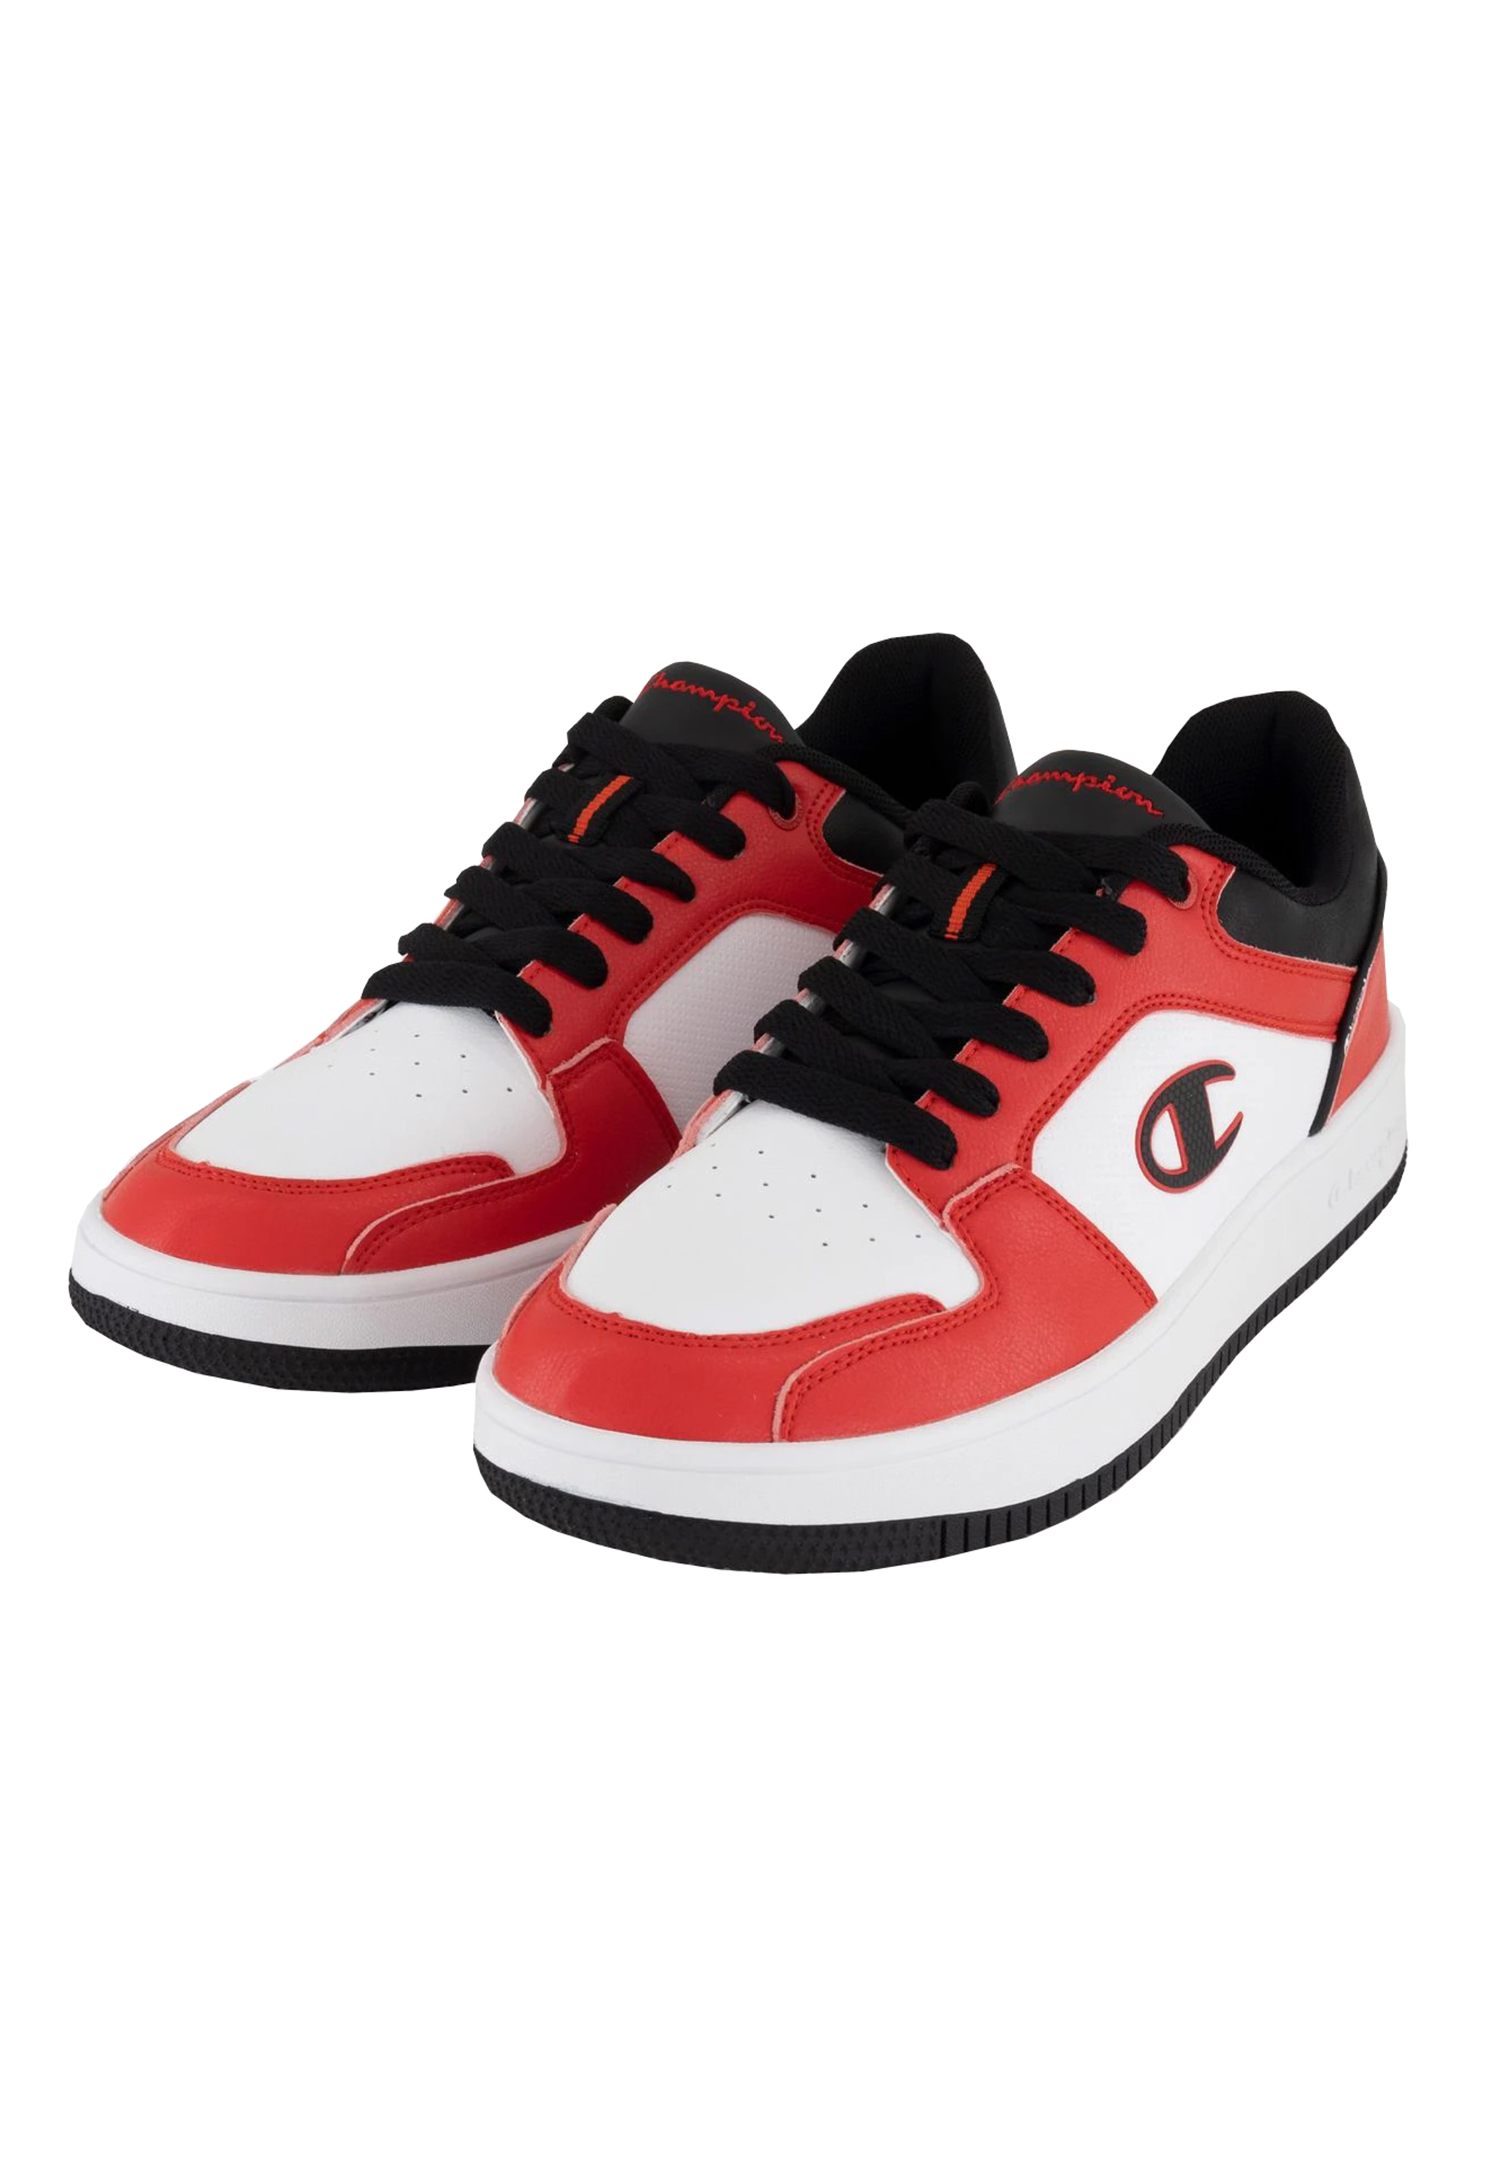 Champion REBOUND 2.0 LOW Herren Sneaker S21906-CHA-RS001 weiß/schwarz/rot